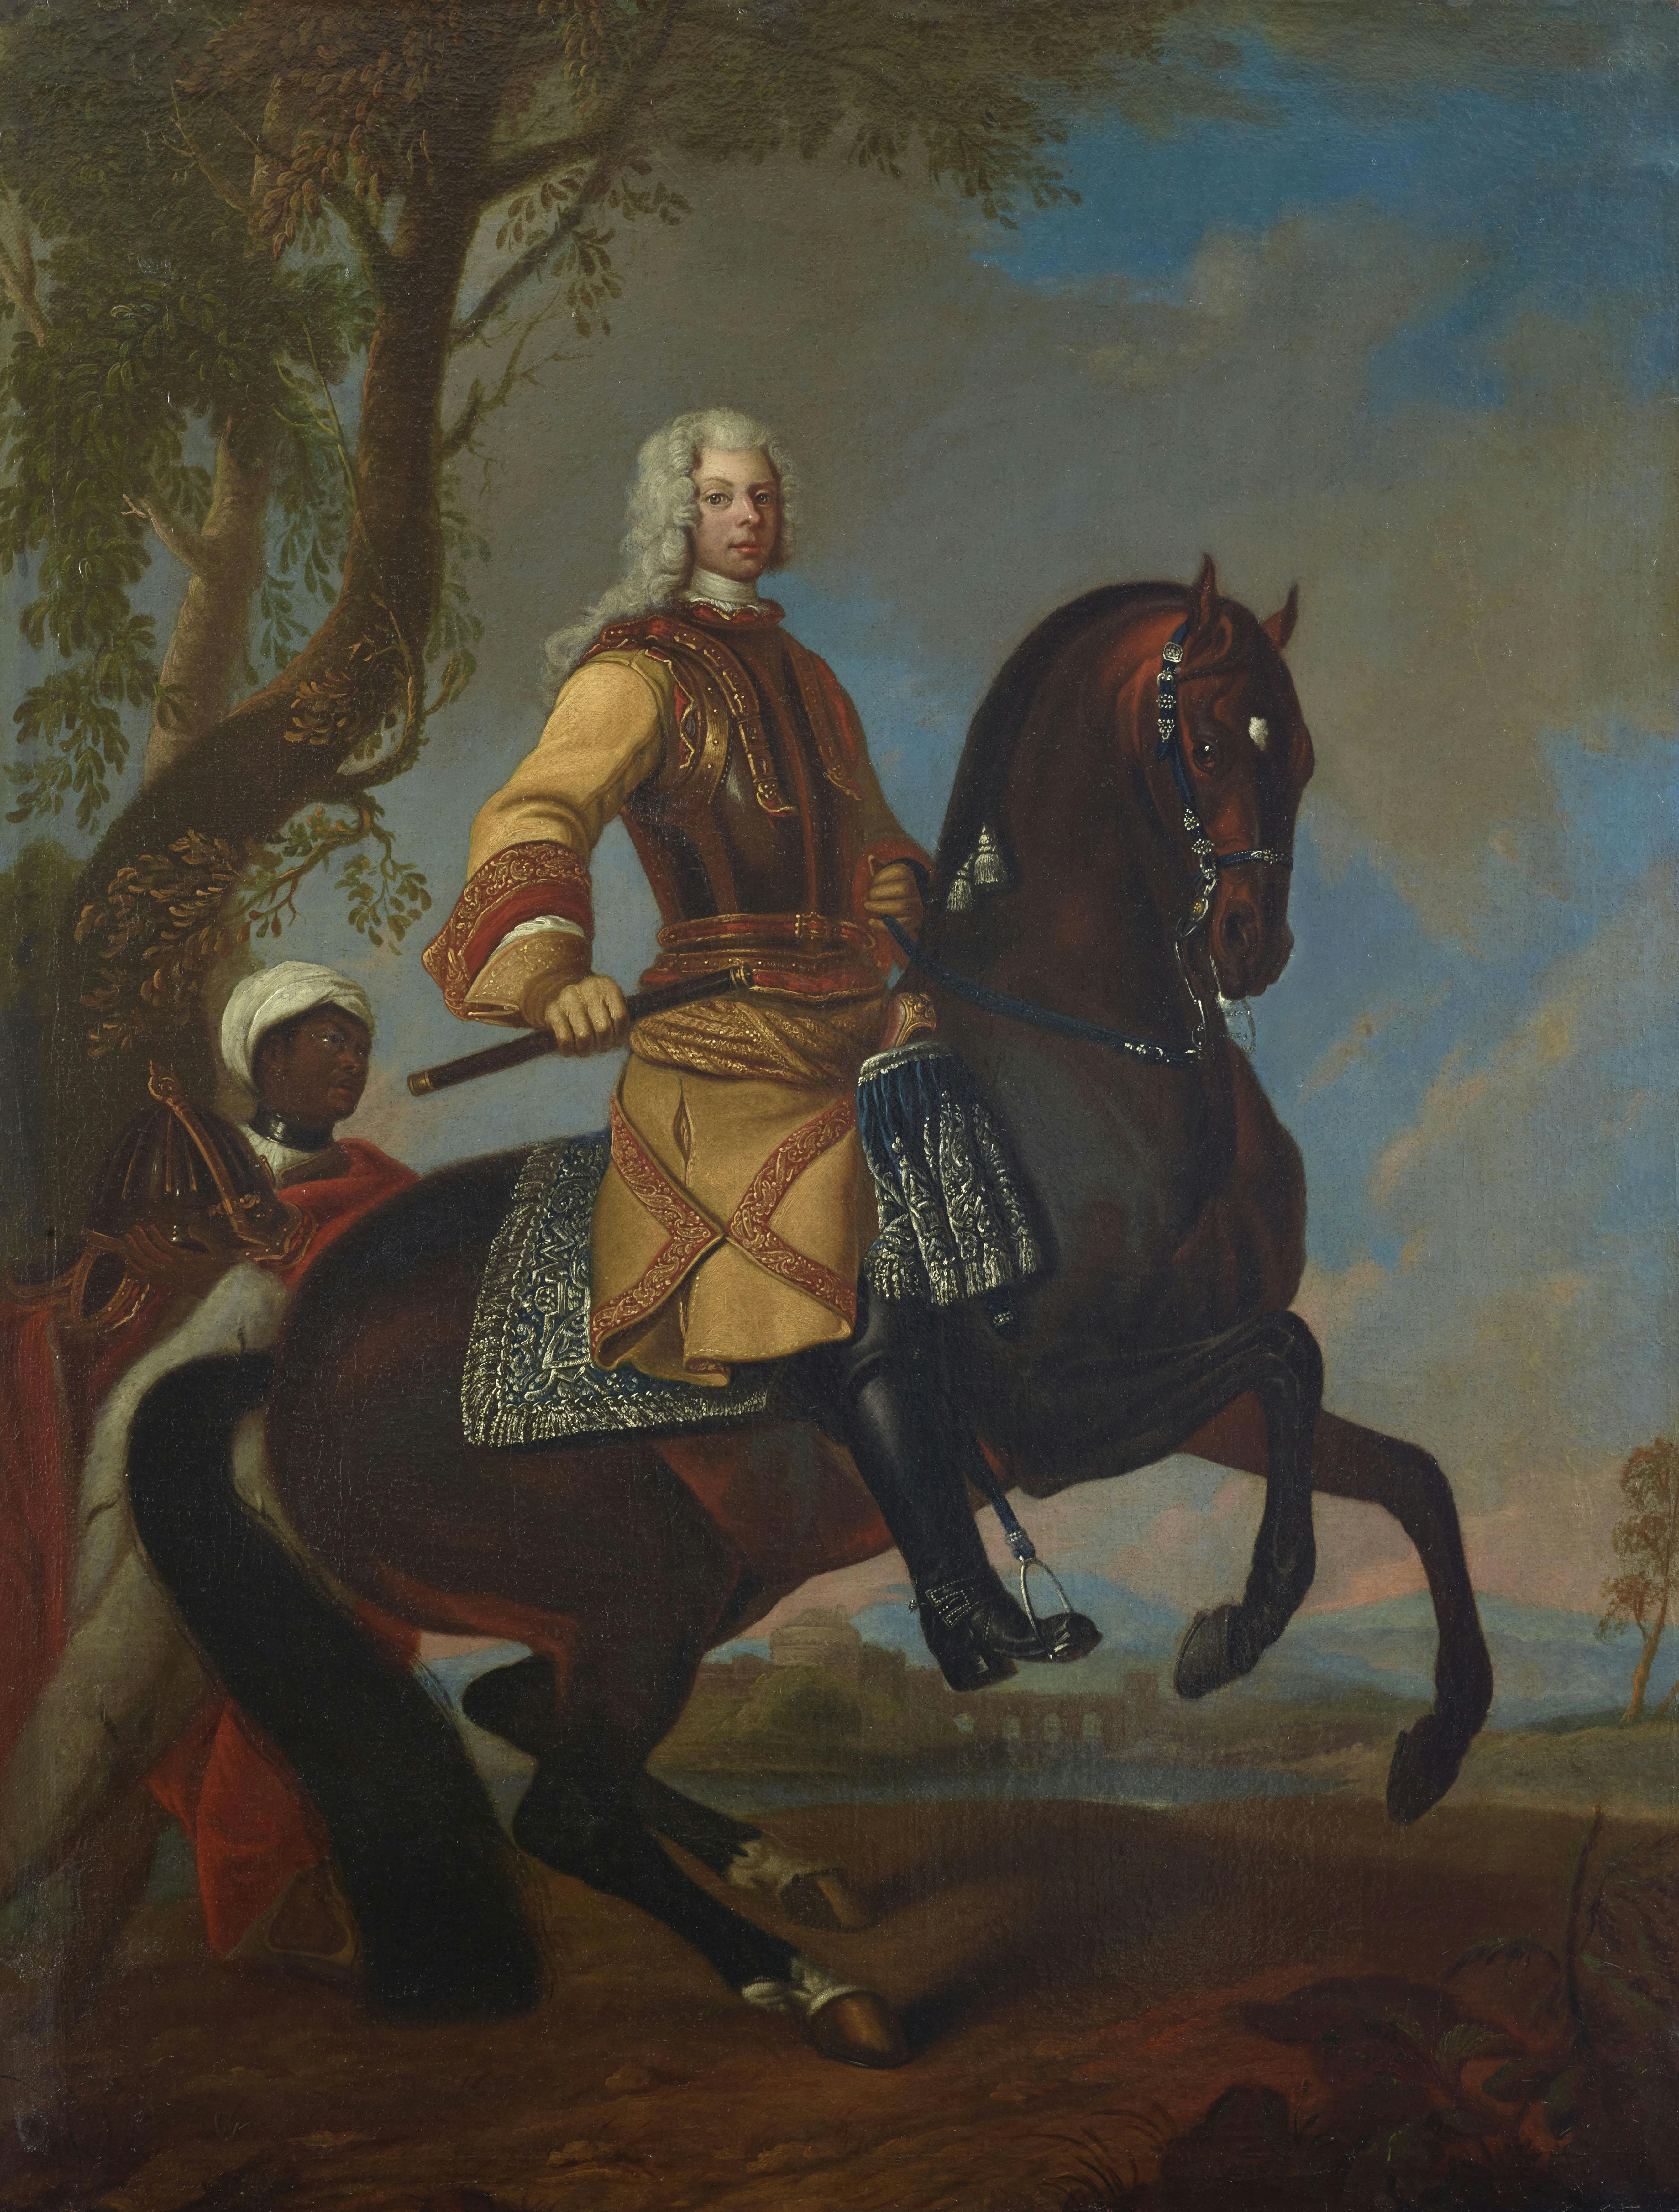 Reiterbildnis des Fürsten Joseph Wenzel I. von Liechtenstein (1696-1772), Maler: Anton Peter van Roy, Öl auf Leinwand